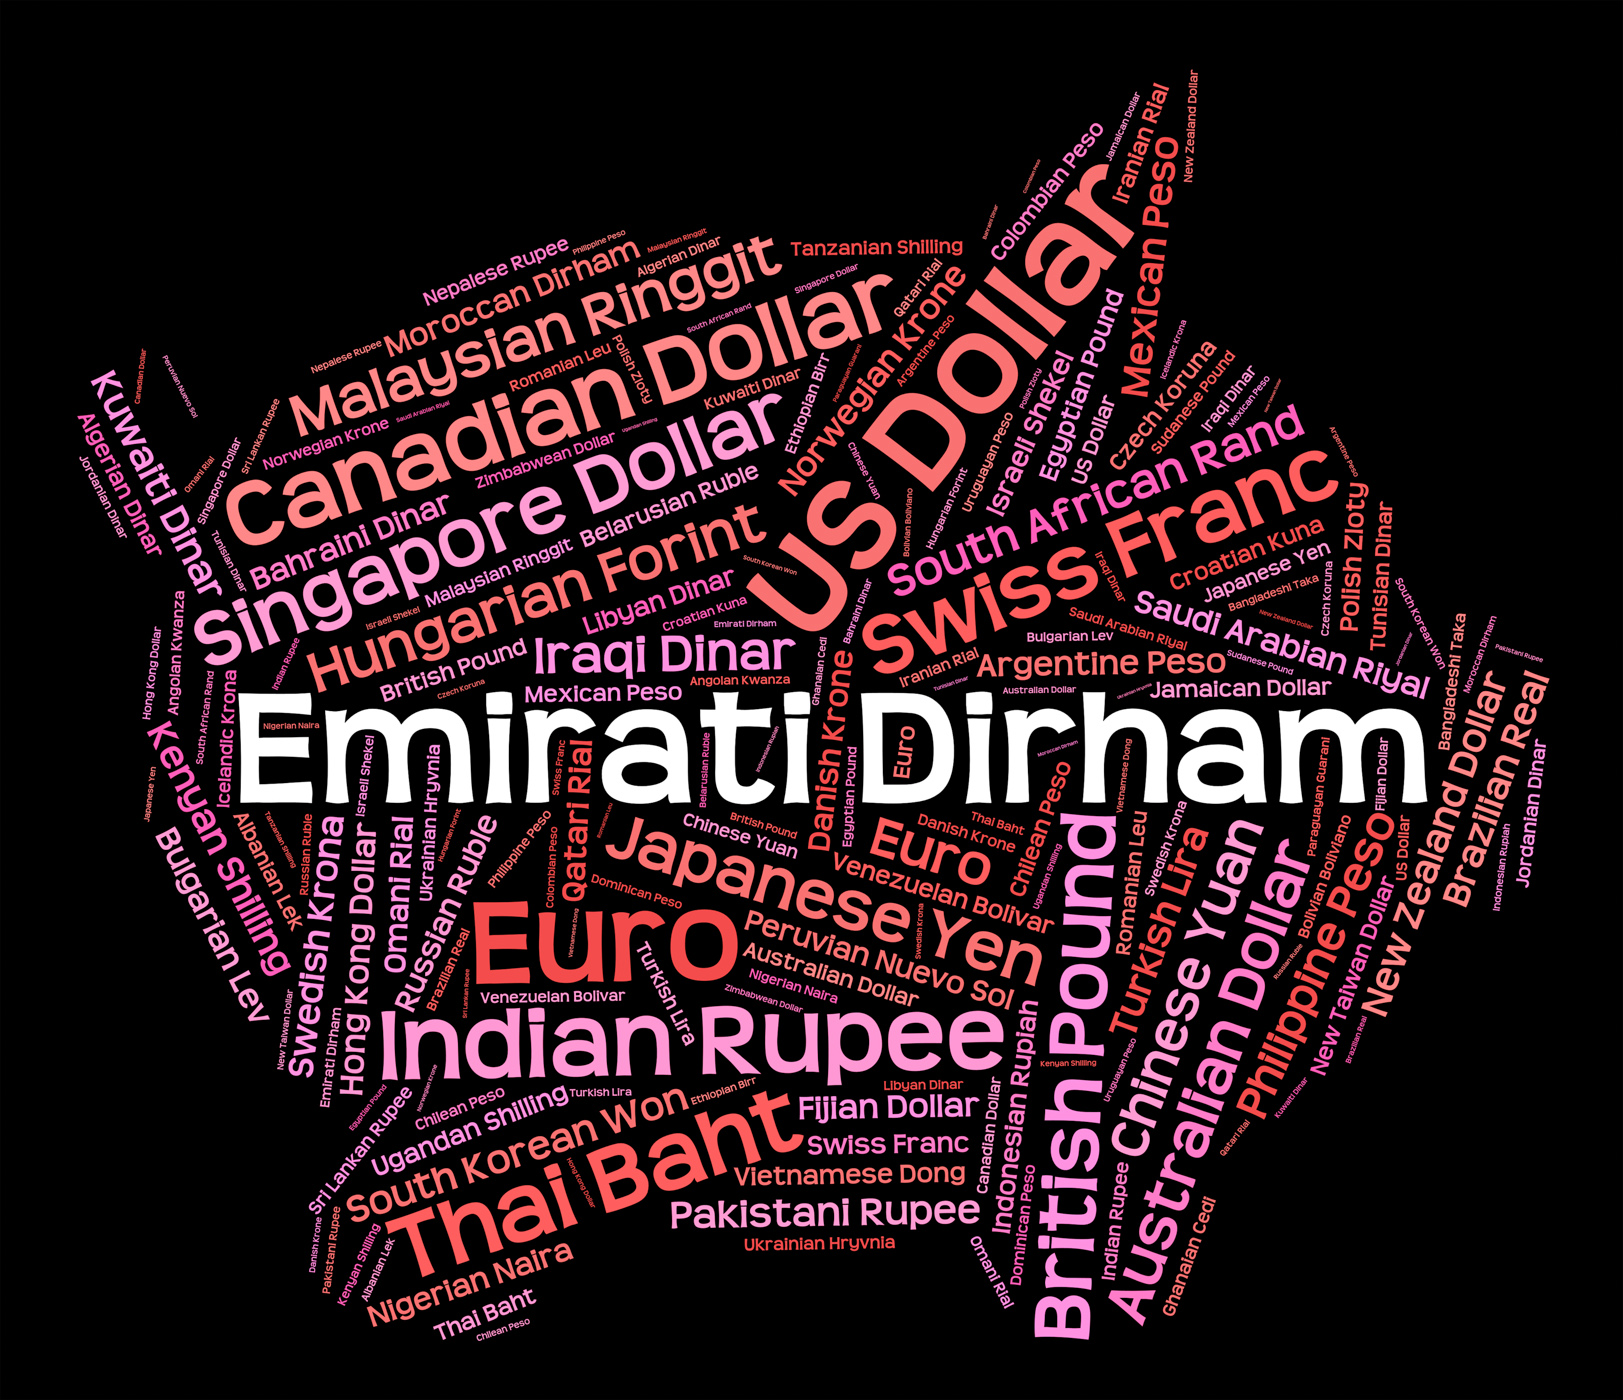 Emirati dirham represents united arab emirates and currencies photo